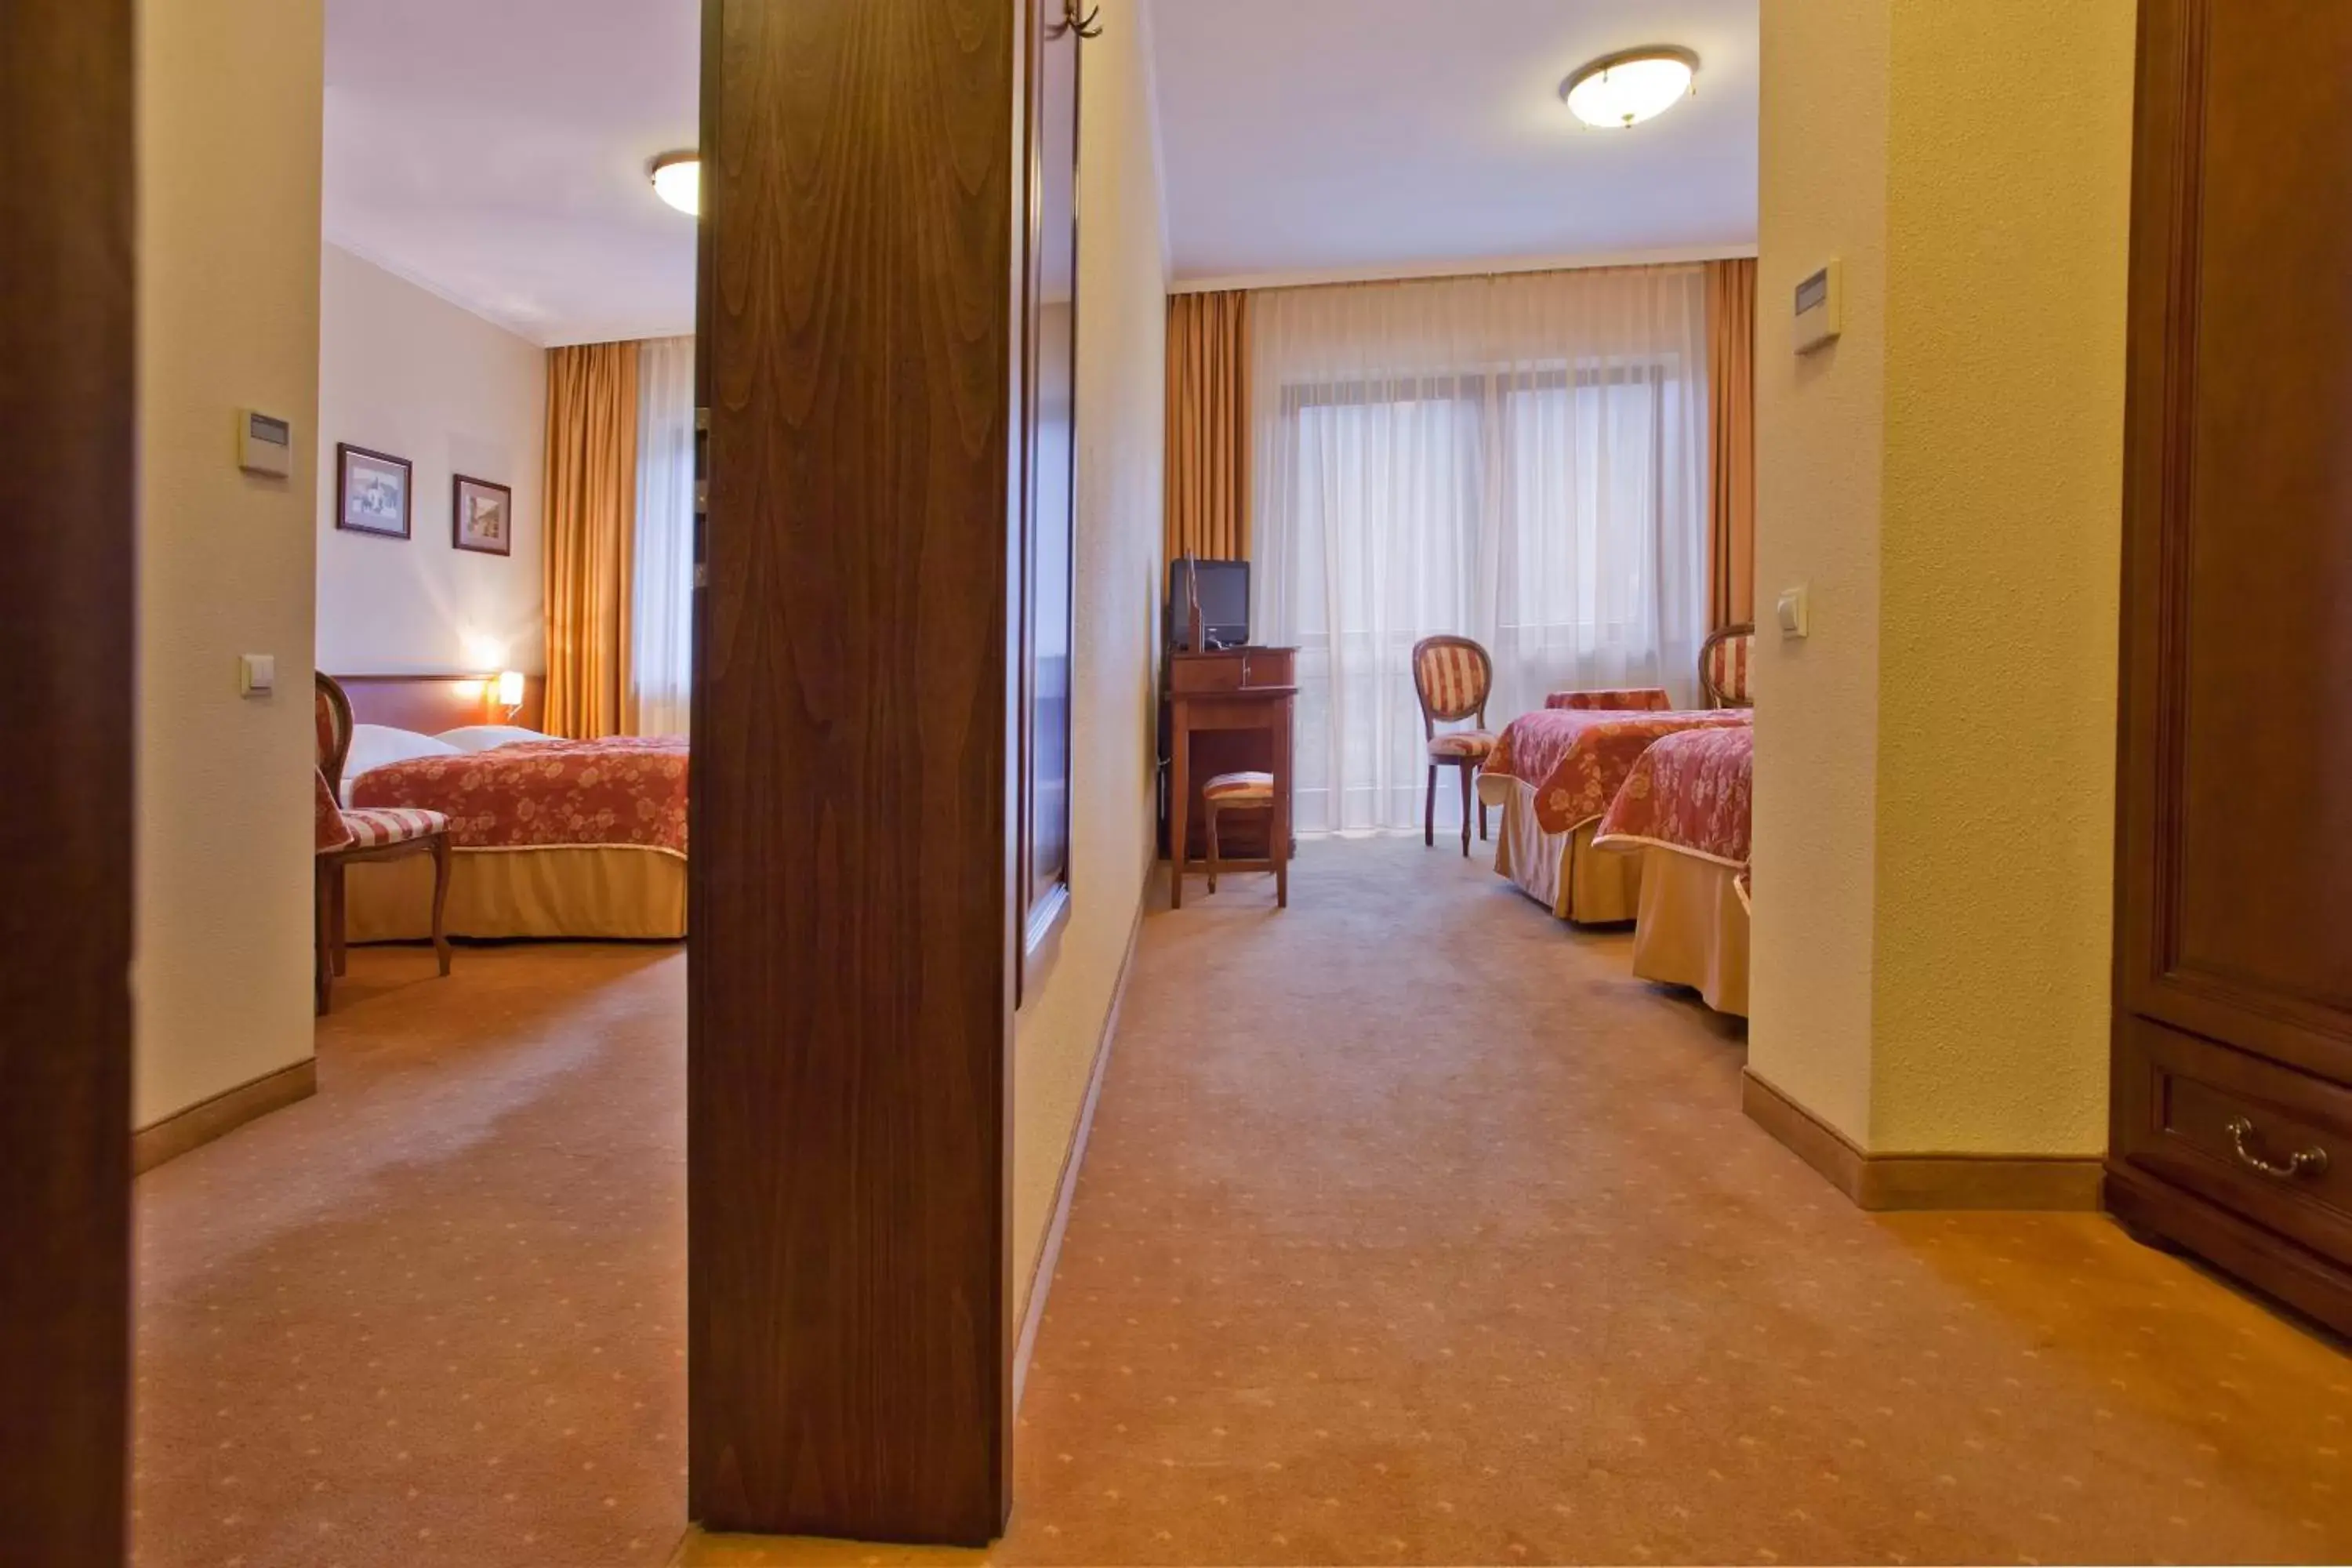 Day, Room Photo in Hotel Klimek Spa